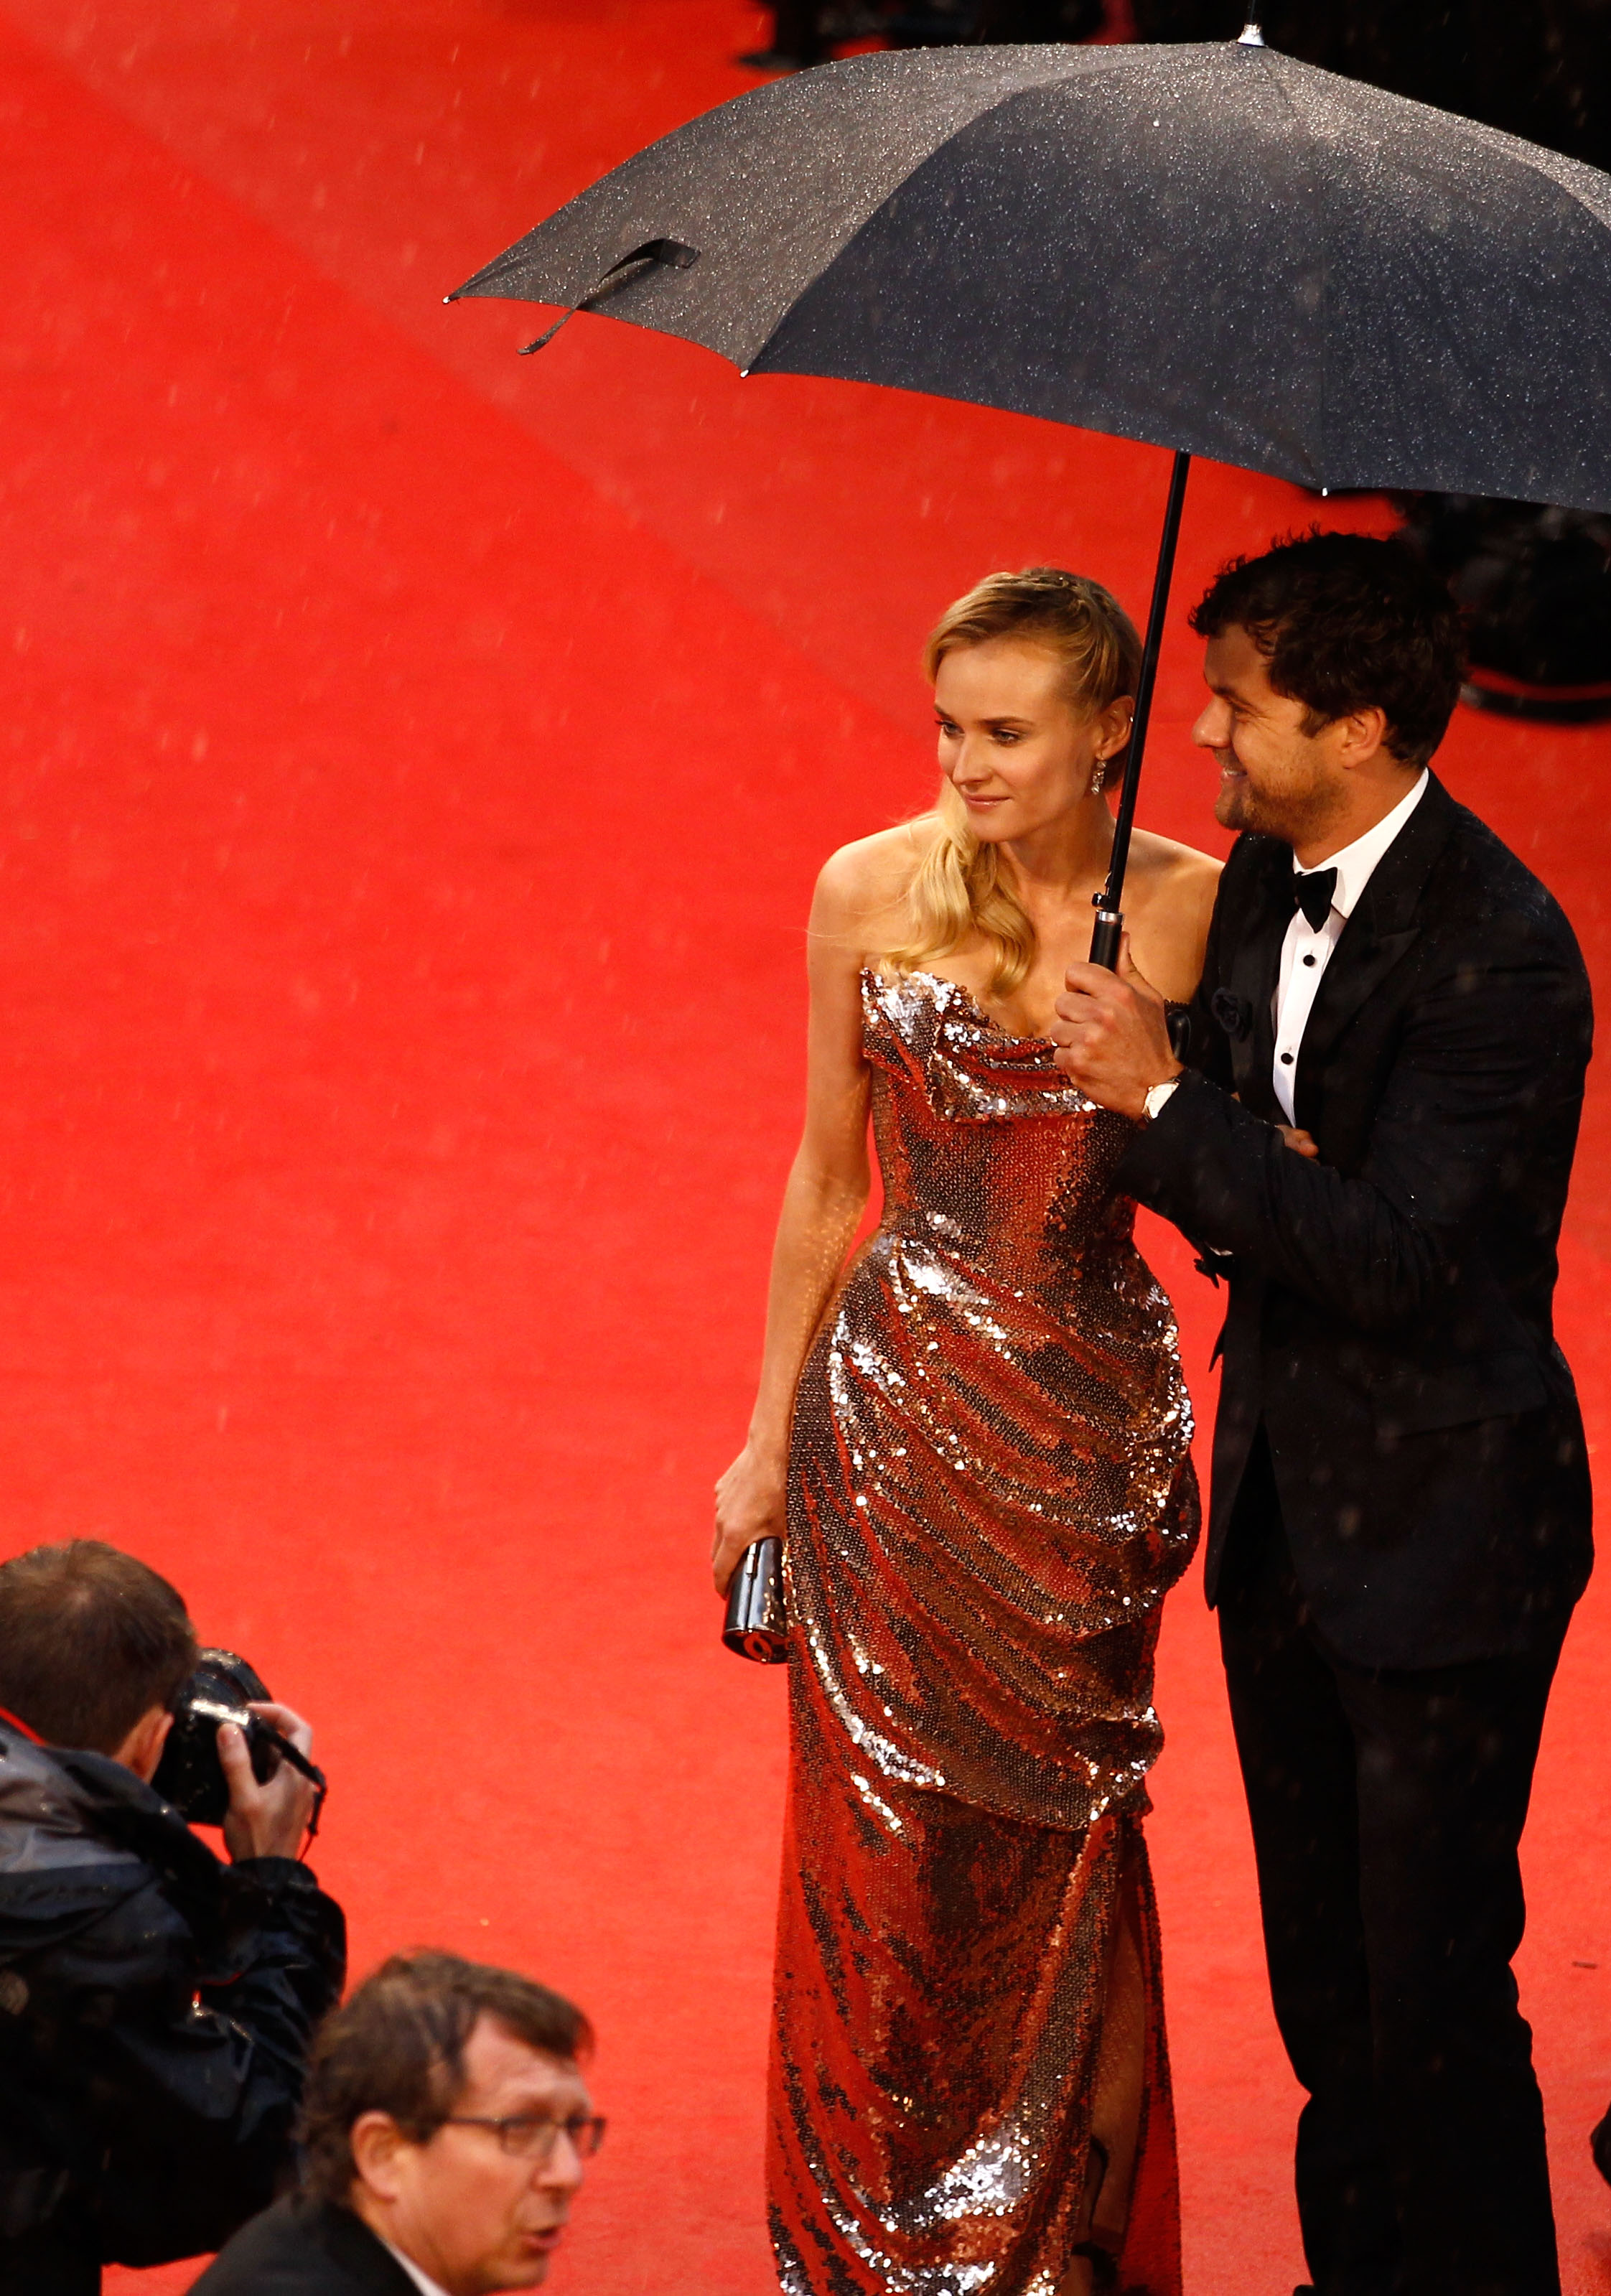 Diane Kruger is Back at Cannes - Go Fug Yourself